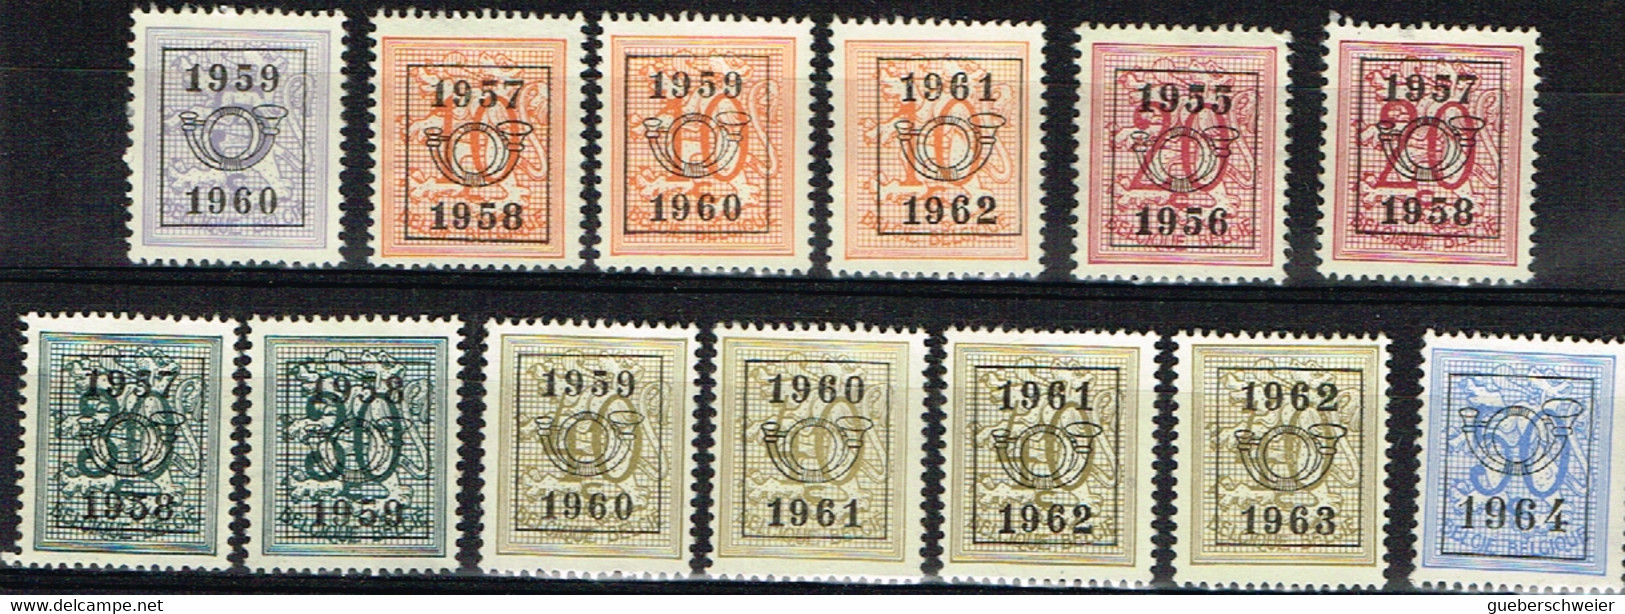 B 83 - BELGIQUE Lot De 13 Timbres Préoblitérés Différents - Typografisch 1967-85 (Leeuw Met Banderole)